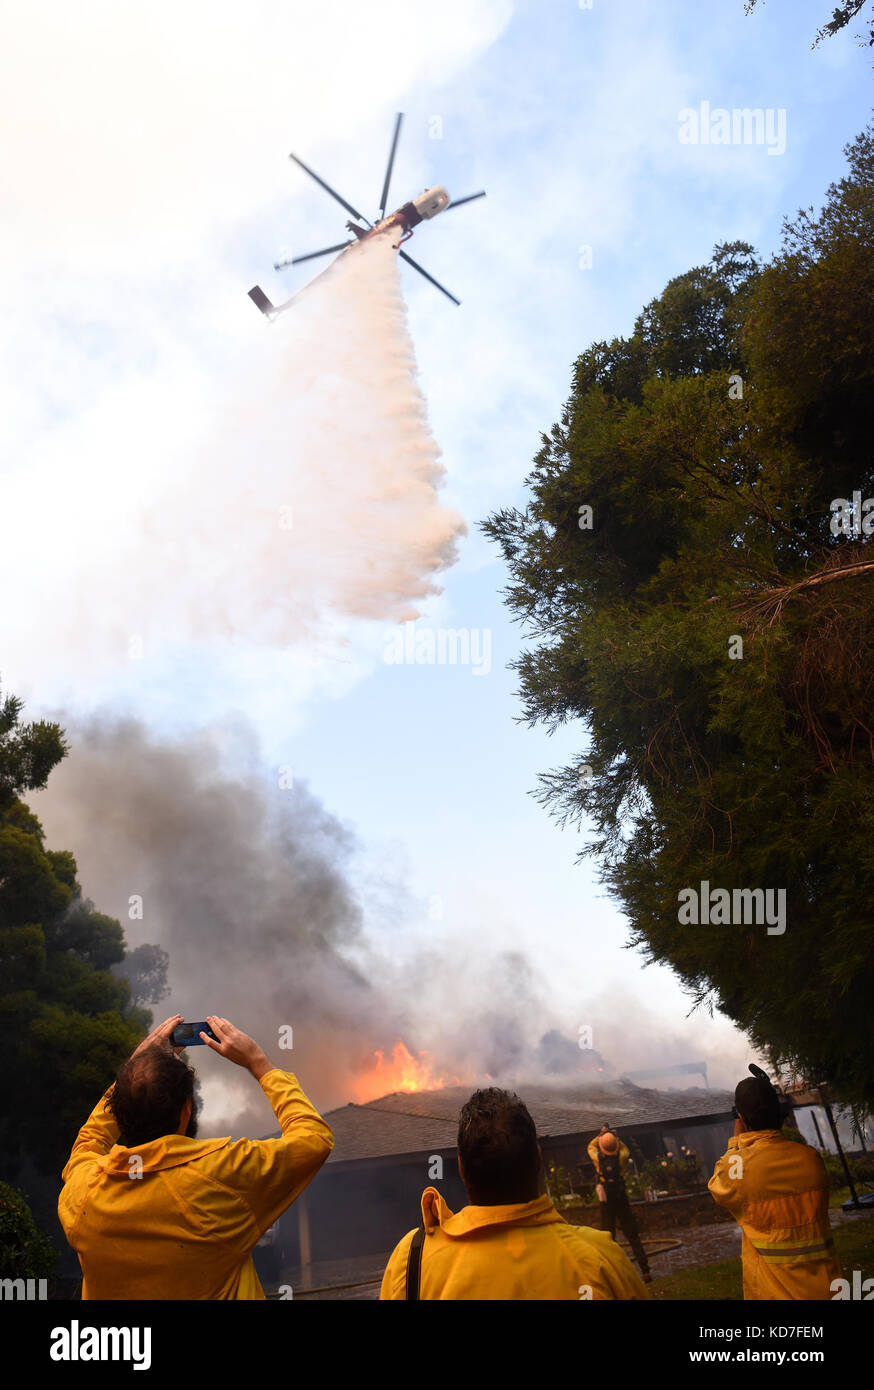 Das 6000 Hektar große Canyon Fire verbraucht eines von 24 Häusern, die beim Wind angetriebenen Bürstenfeuer in Anaheim, Kalifornien, am 10. Oktober 2017 zerstört wurden. Oktober 2017. Kredit: Steven K. Doi/ZUMA Wire/Alamy Live News Stockfoto